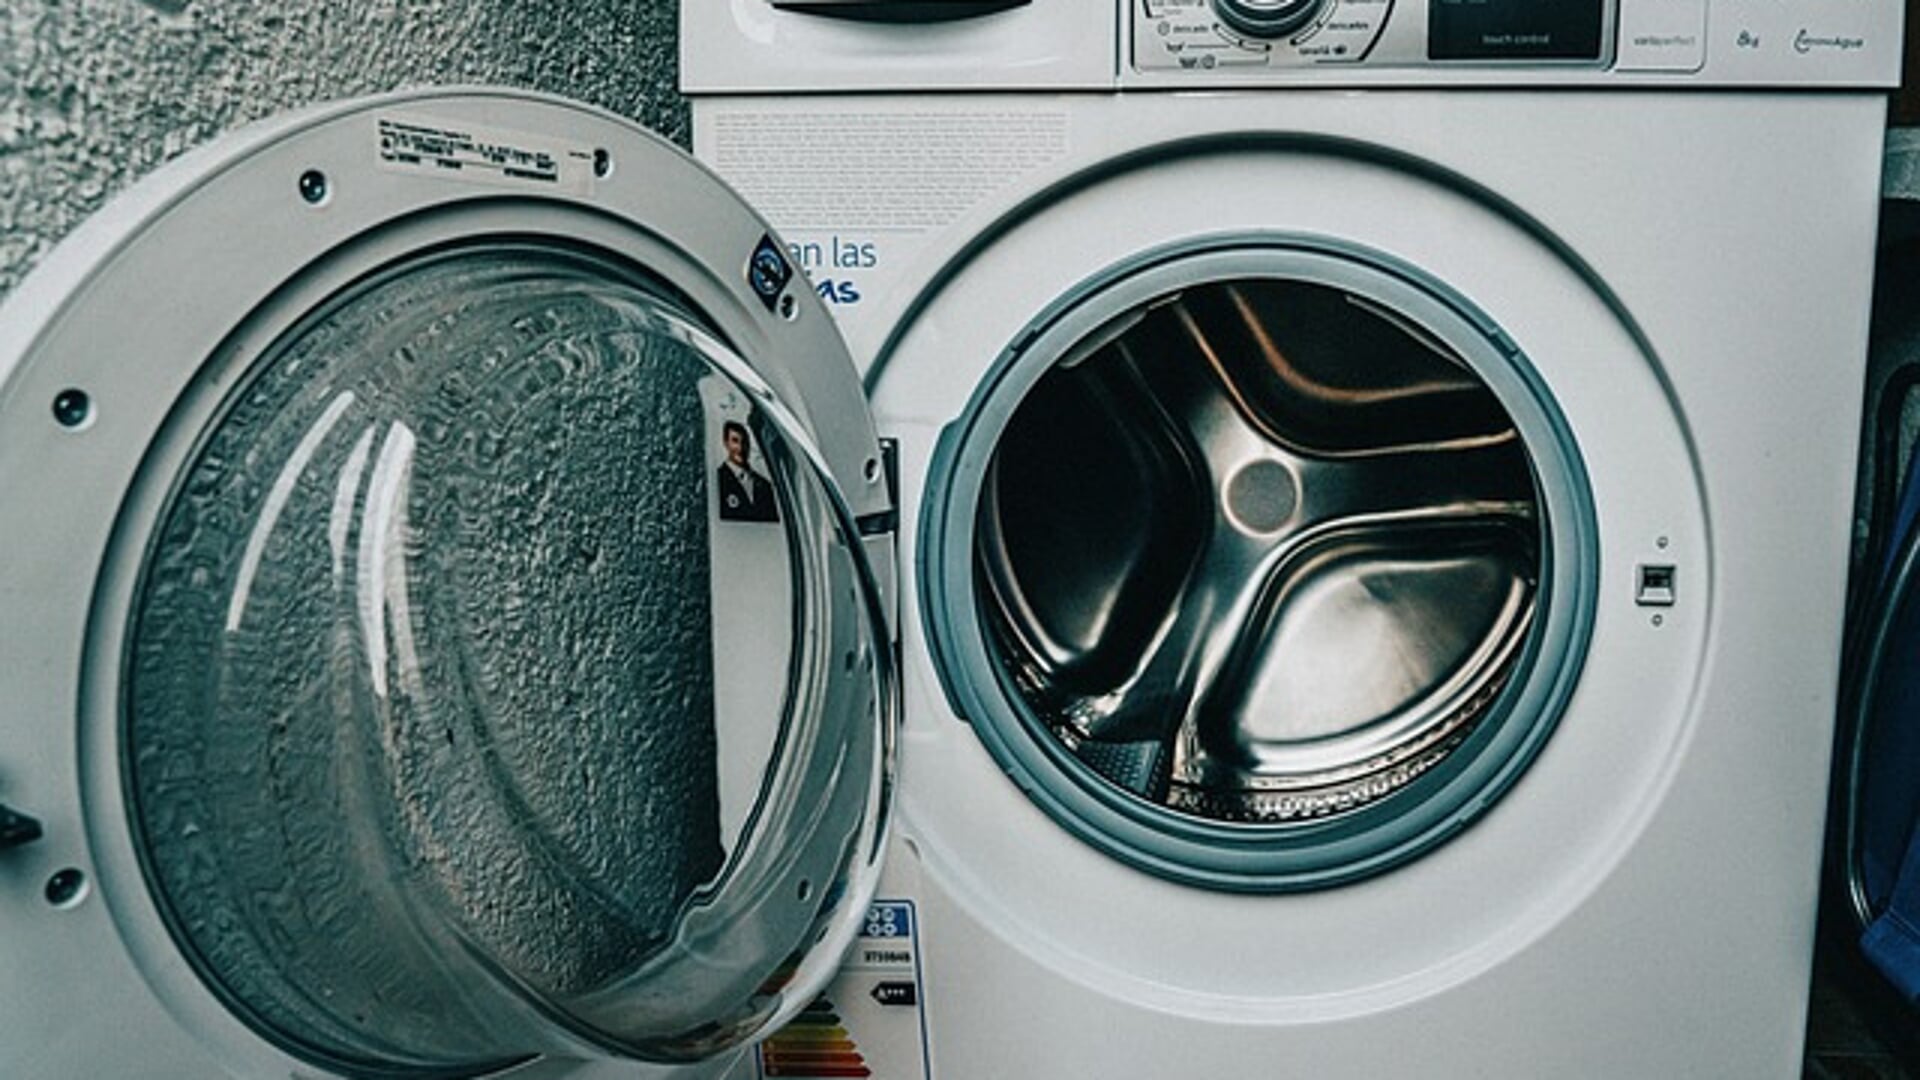 De bon ter waarde van 500 euro kan onder meer gebruikt worden voor aanschaf van een energiezuinige wasmachine.